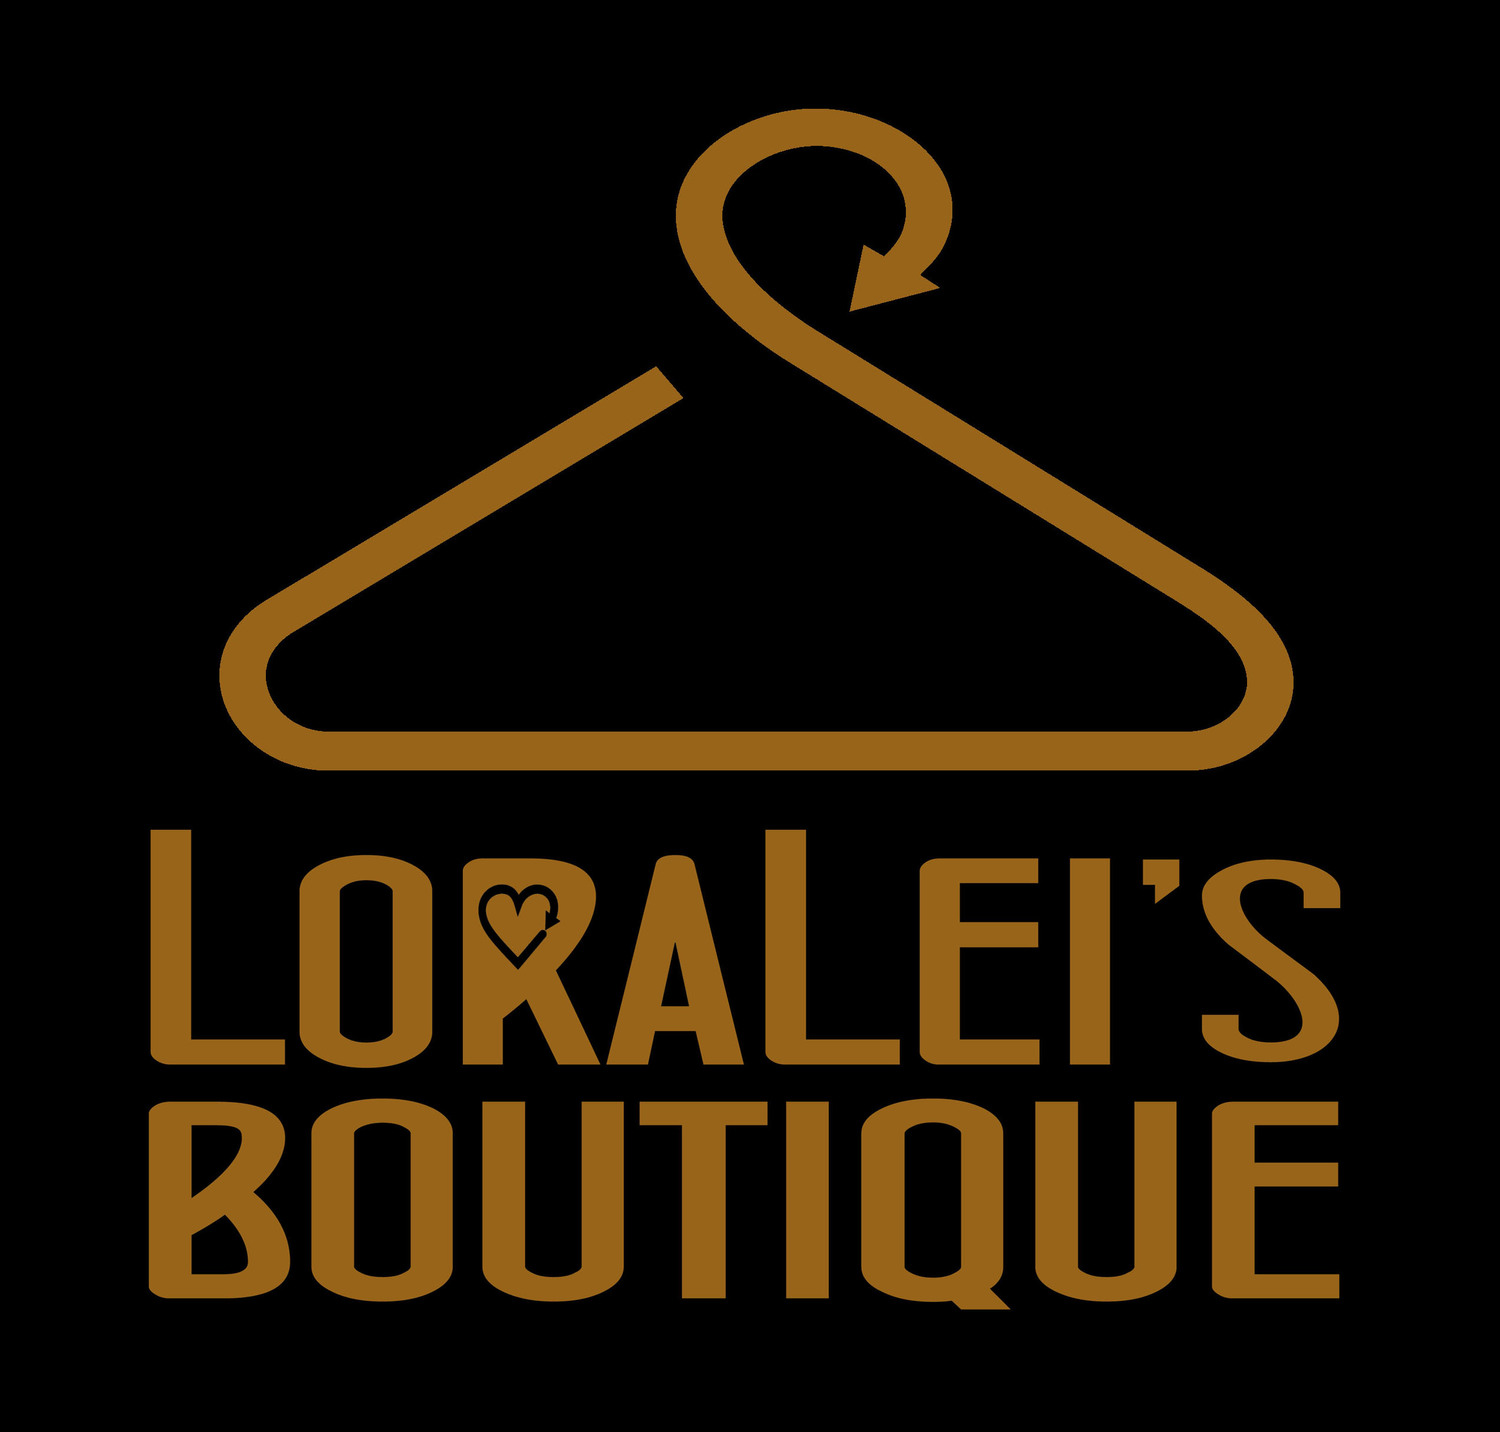 Loralei's Boutique